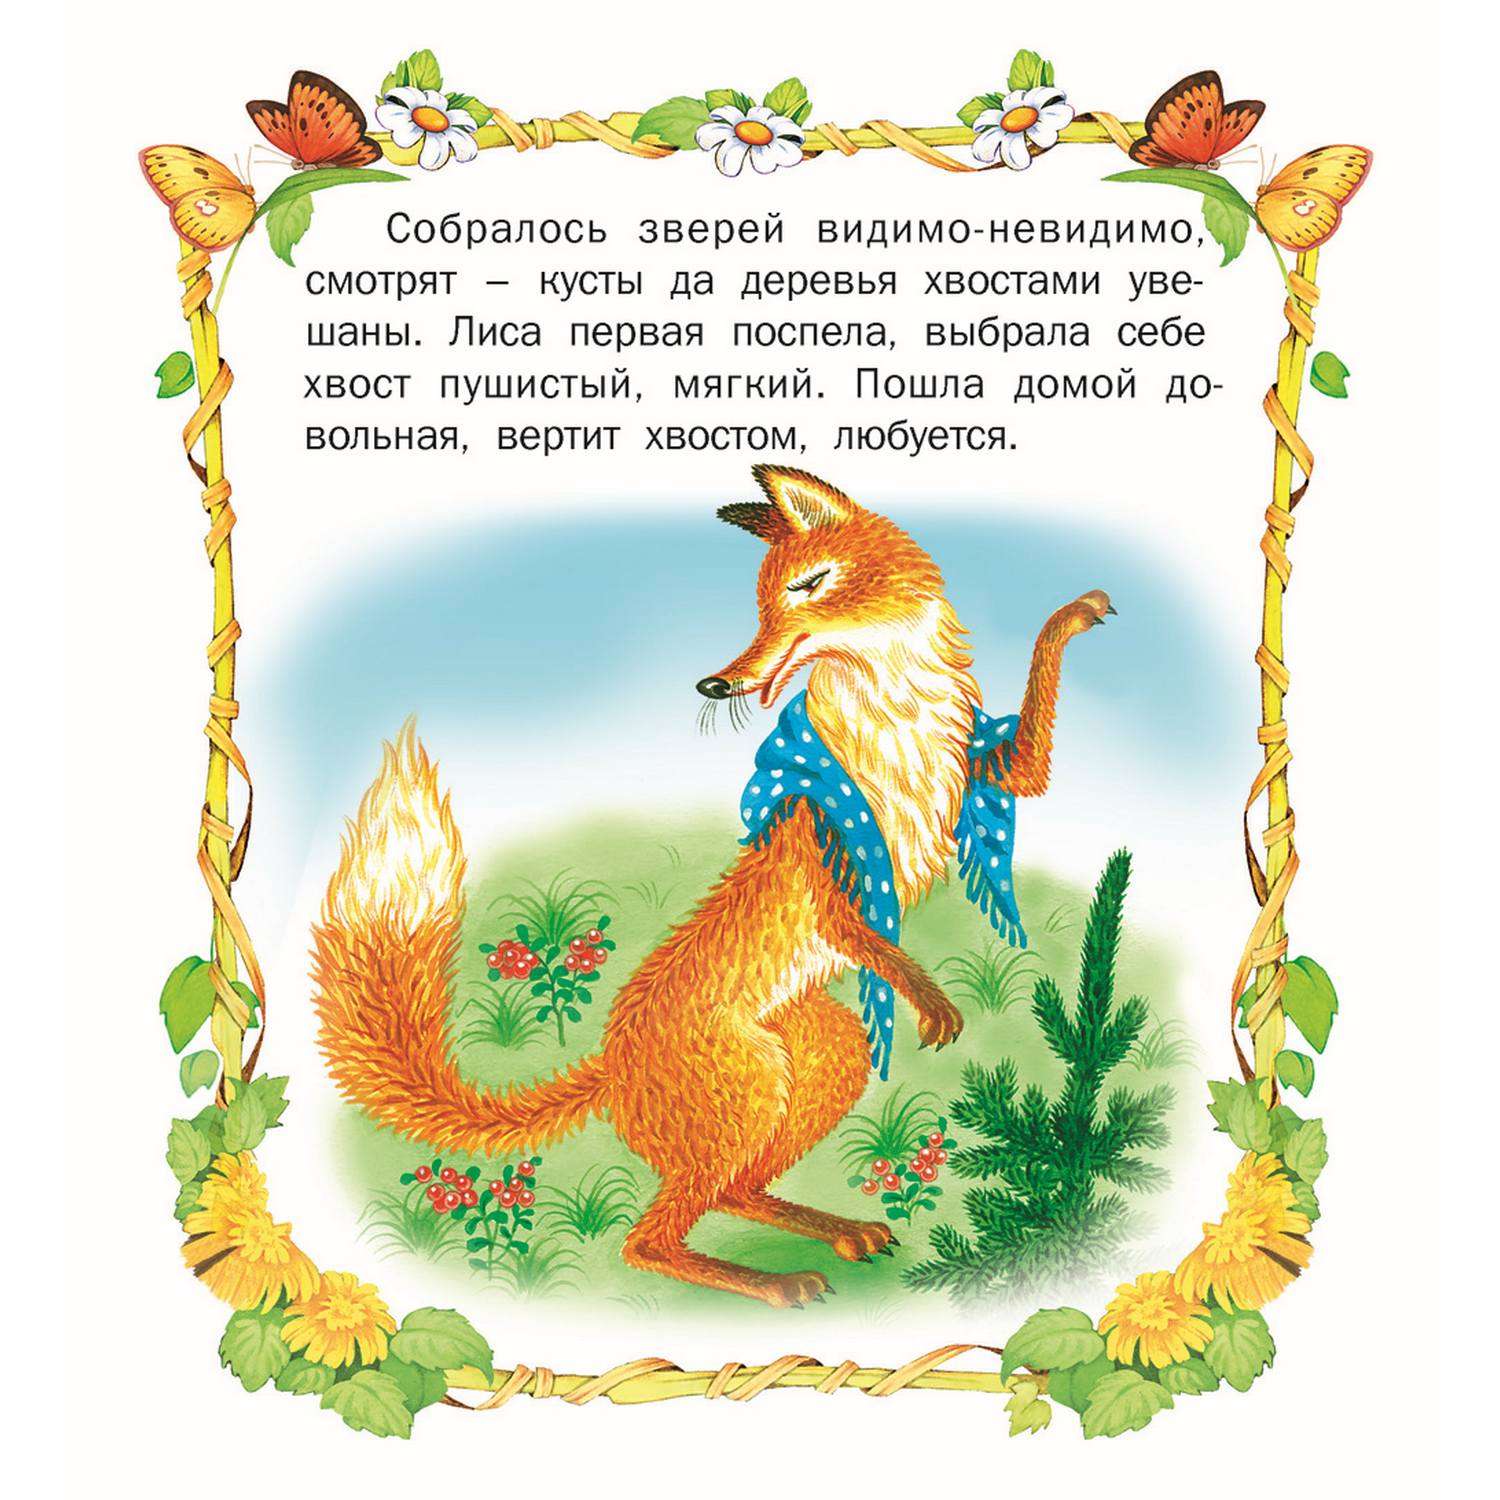 Книга Русич стихи и сказки для детей комплект 5 шт - фото 12